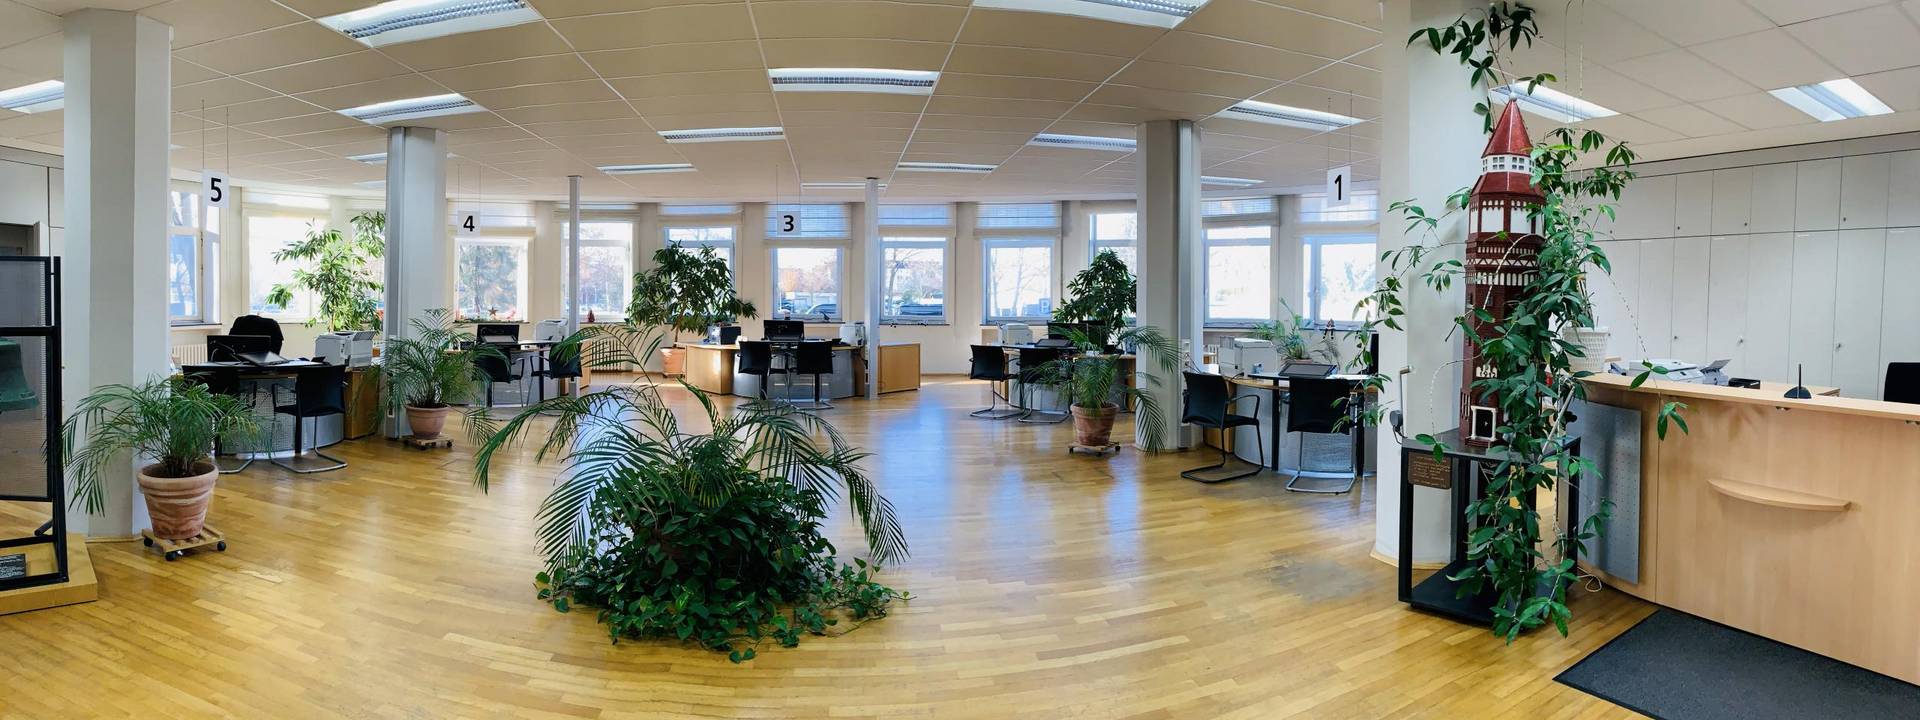 bürgerbüro panorama  ©Gottbrecht